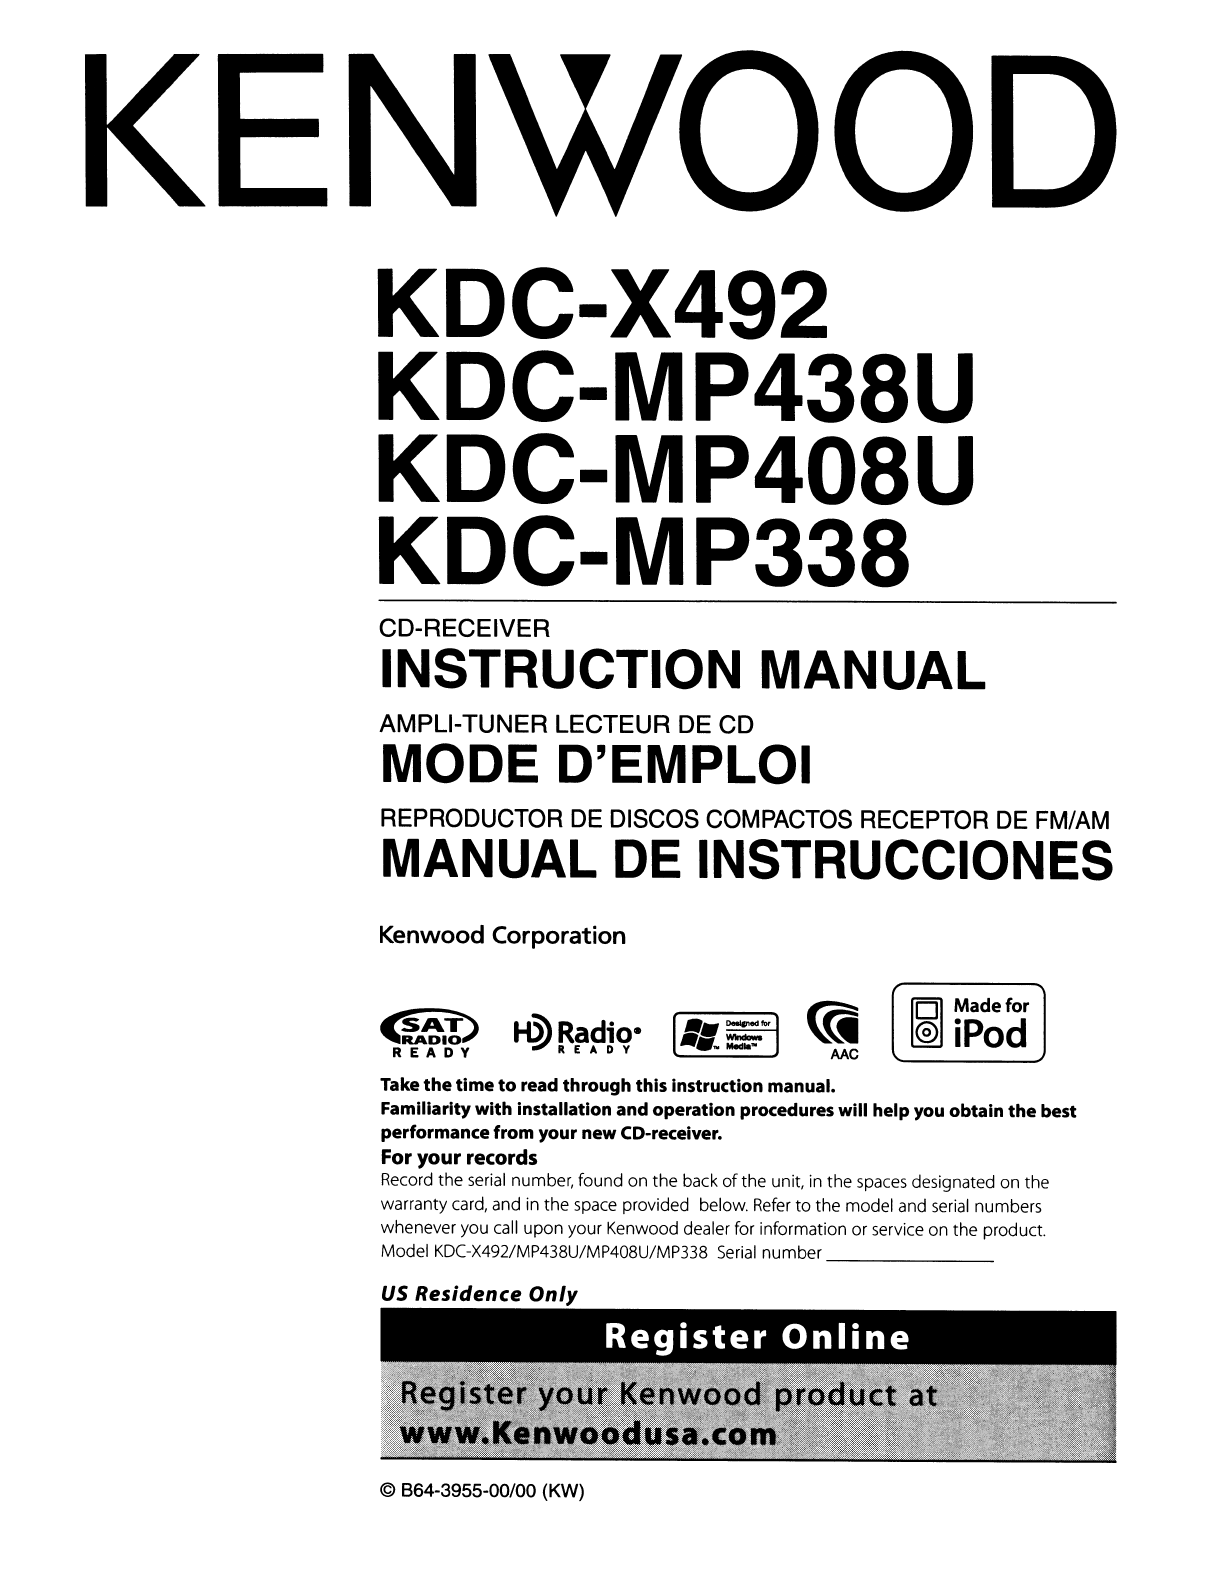 Kenwood cd changer manual